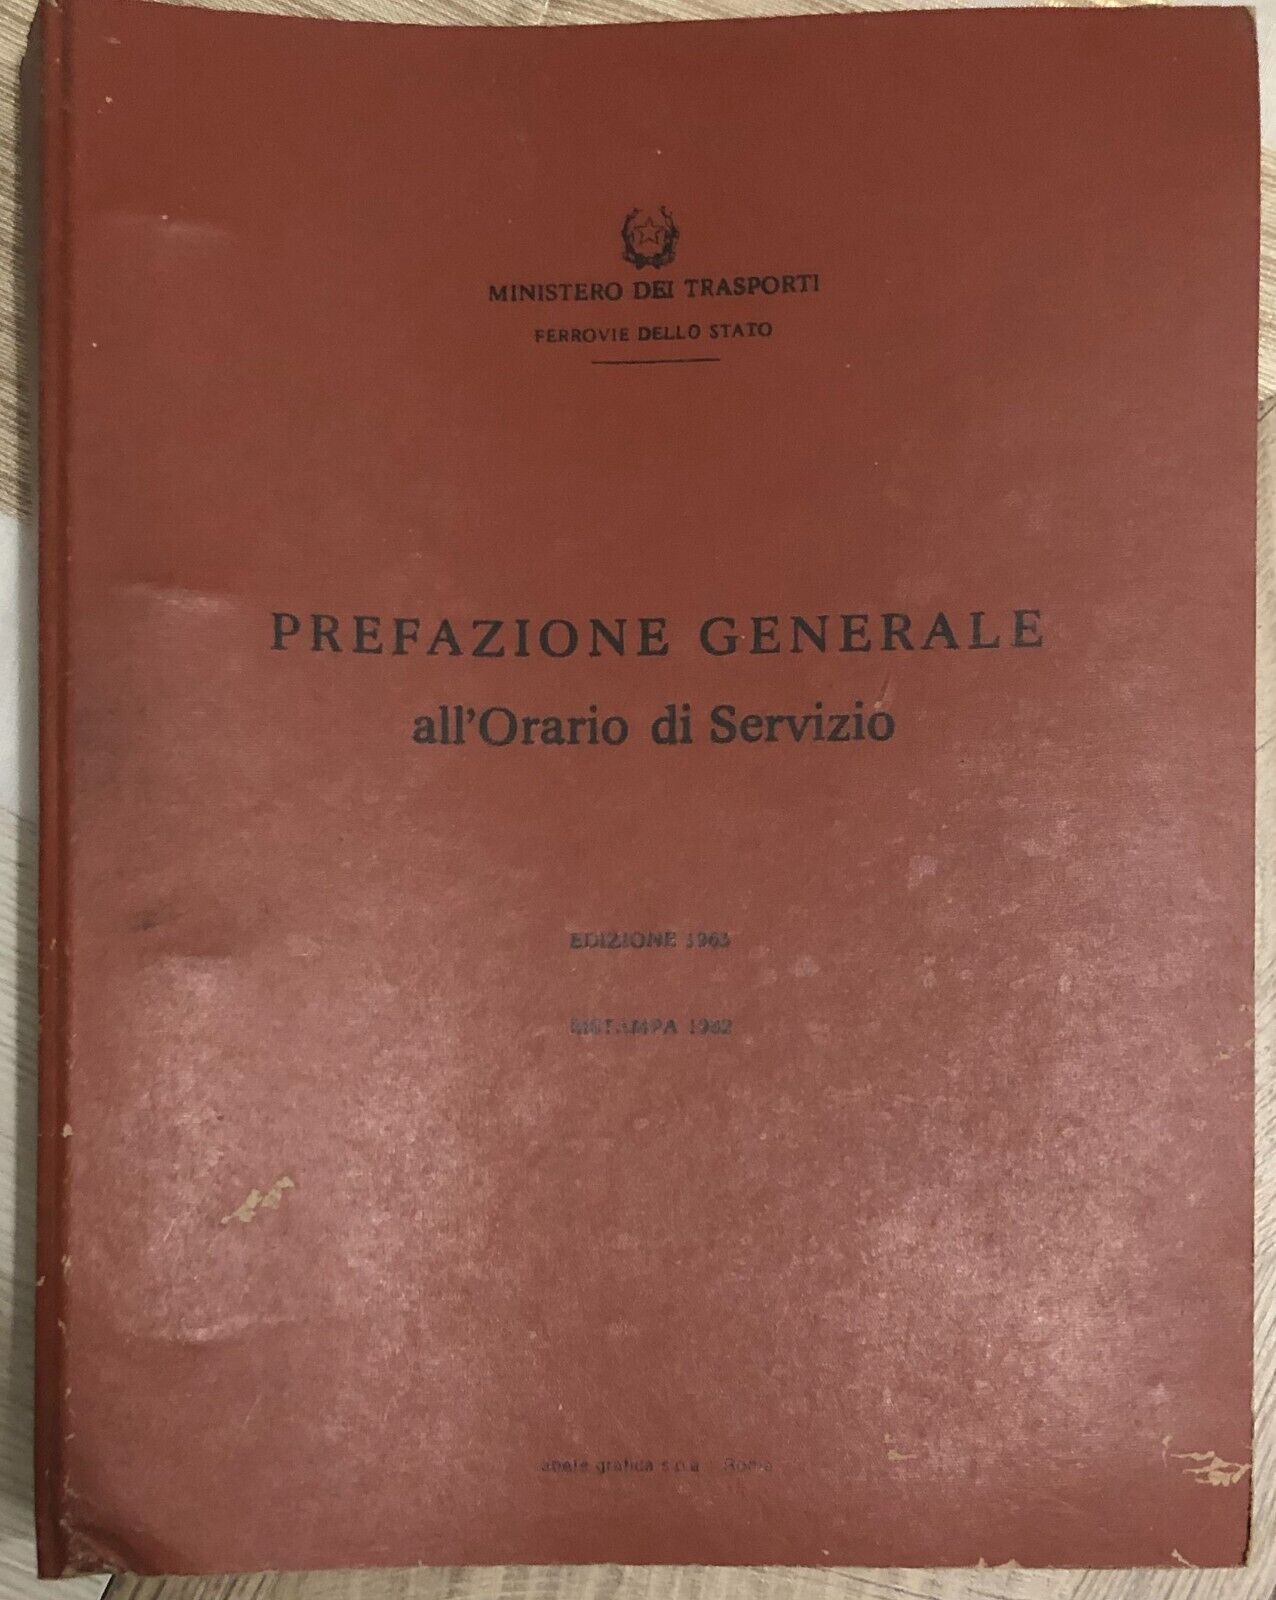 Prefazione generale alL'Orario di esercizio Ristampa 1982 di Aa.vv.,  1982,  Min